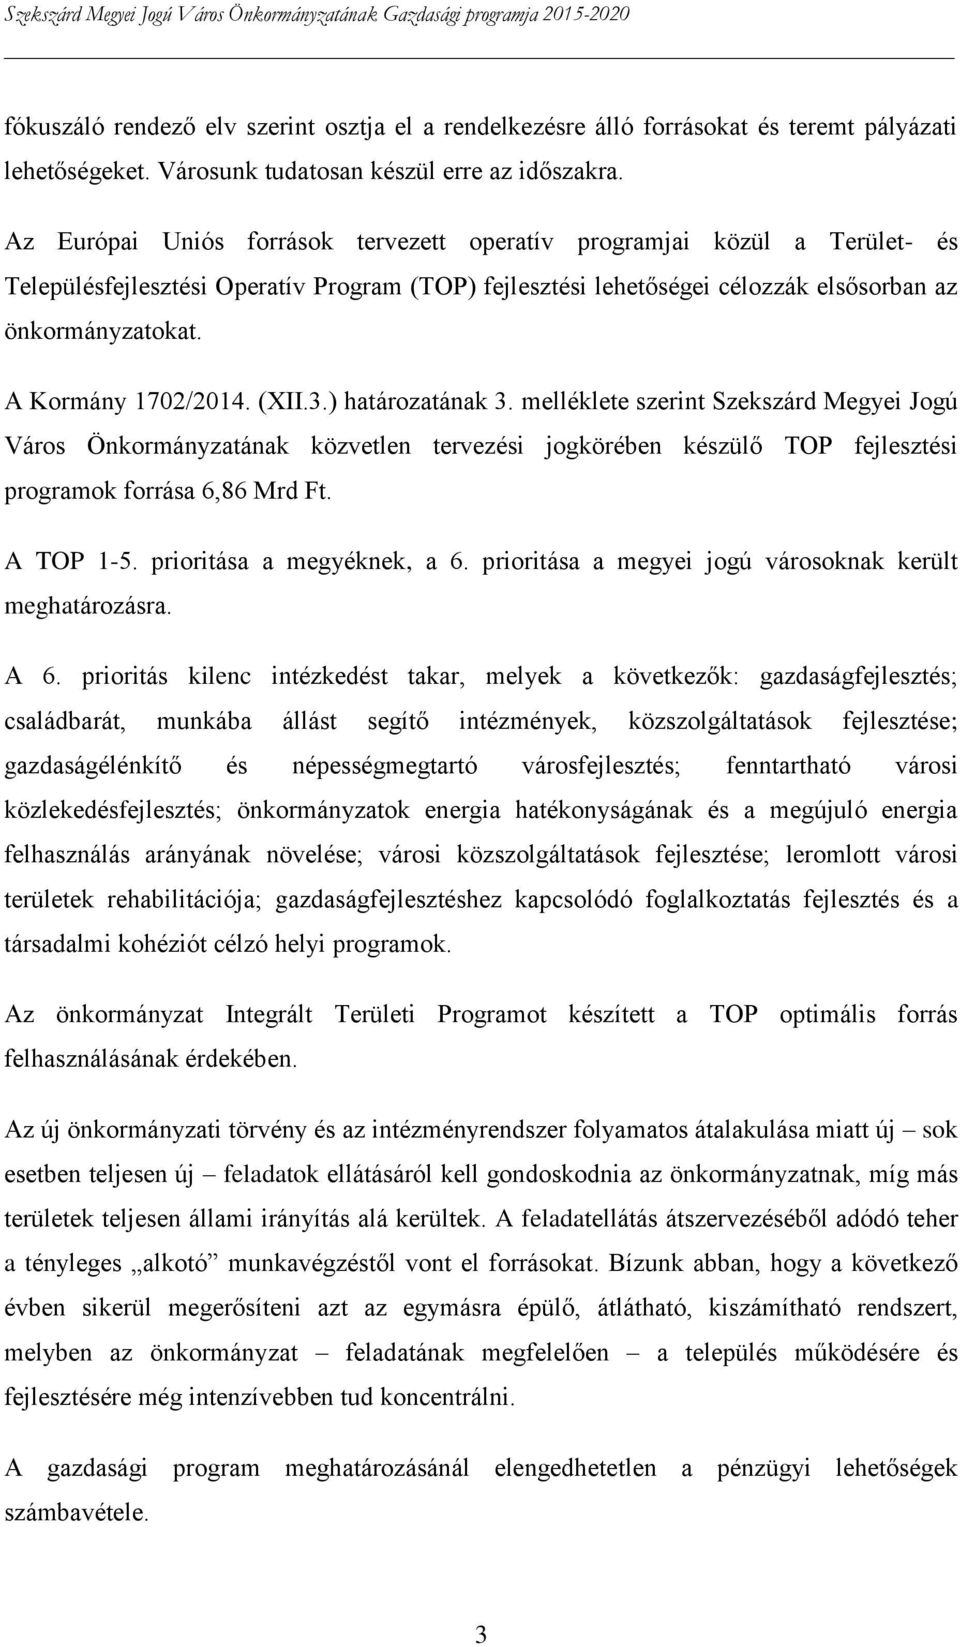 A Kormány 1702/2014. (XII.3.) határozatának 3. melléklete szerint Szekszárd Megyei Jogú Város Önkormányzatának közvetlen tervezési jogkörében készülő TOP fejlesztési programok forrása 6,86 Mrd Ft.